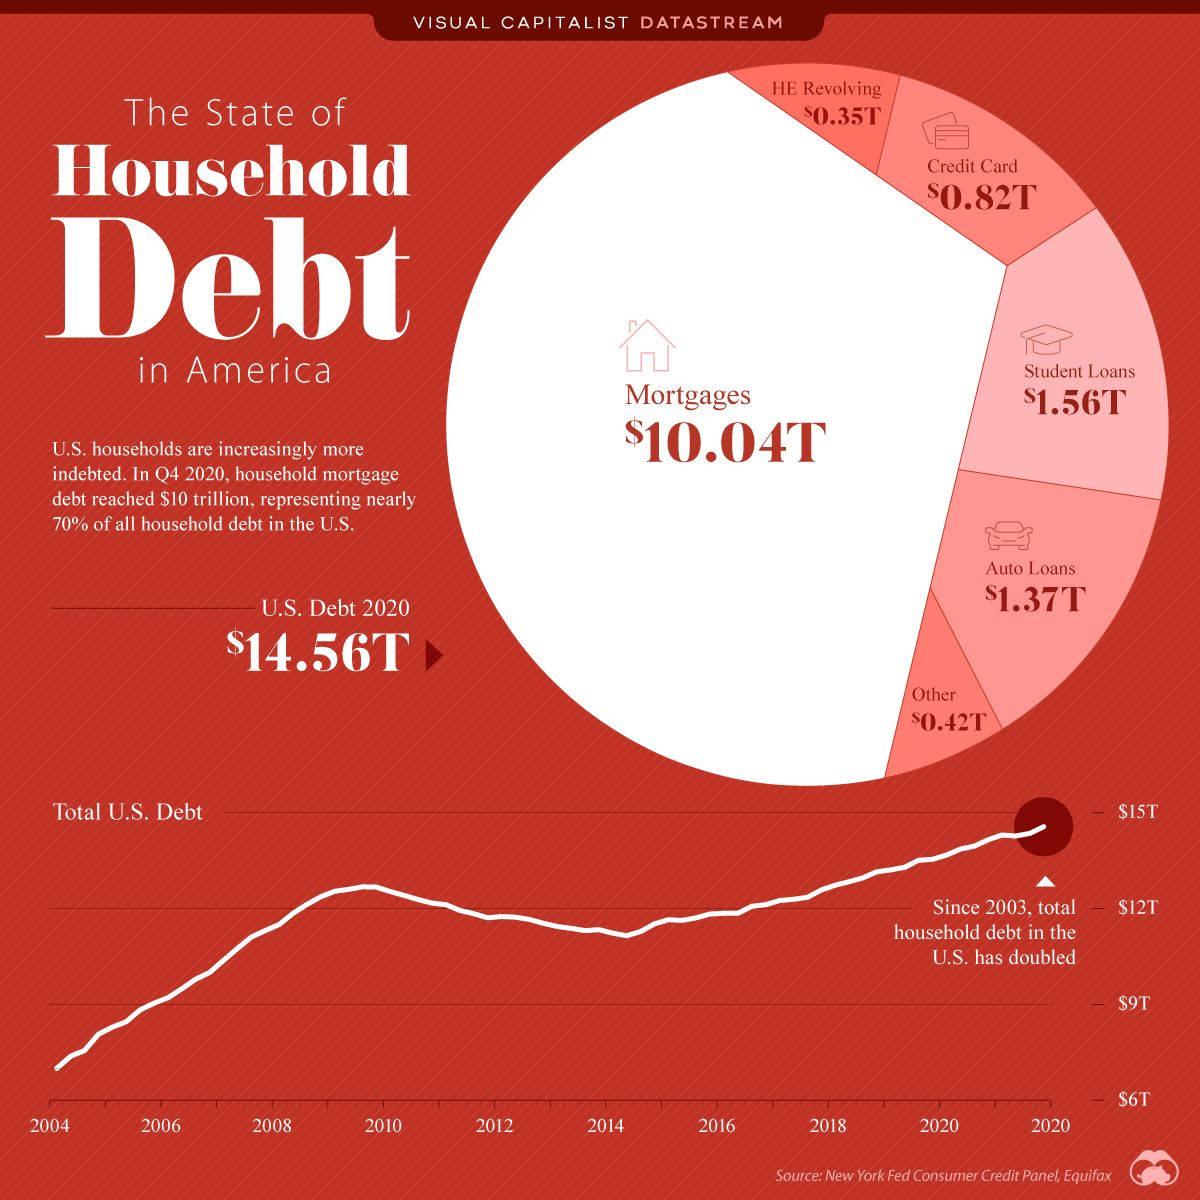 Growing household debt in America